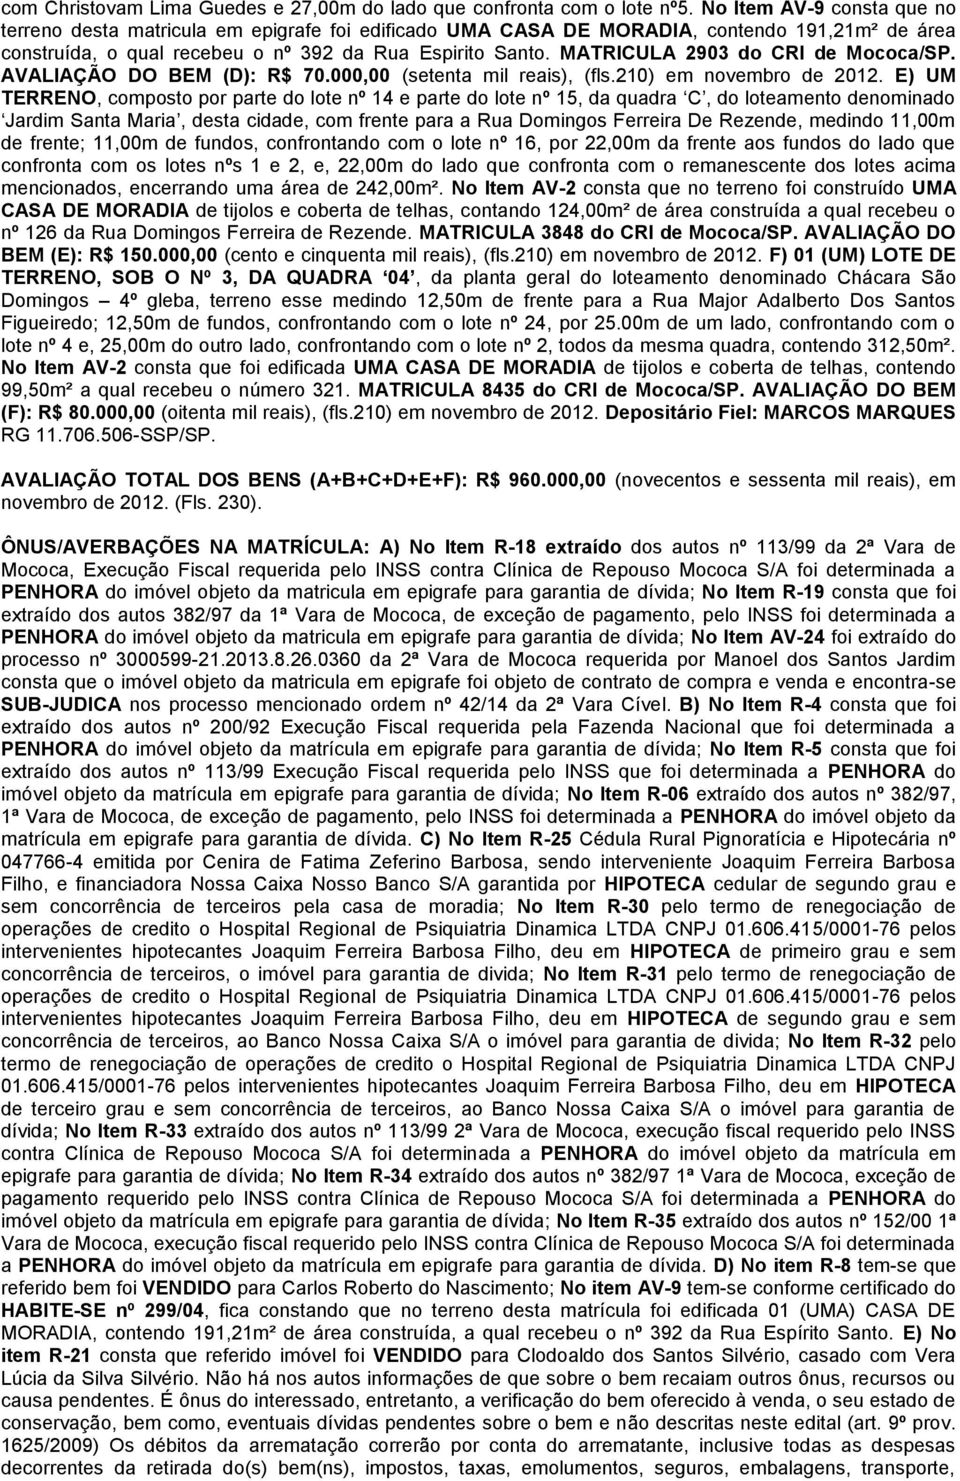 MATRICULA 2903 do CRI de Mococa/SP. AVALIAÇÃO DO BEM (D): R$ 70.000,00 (setenta mil reais), (fls.210) em novembro de 2012.